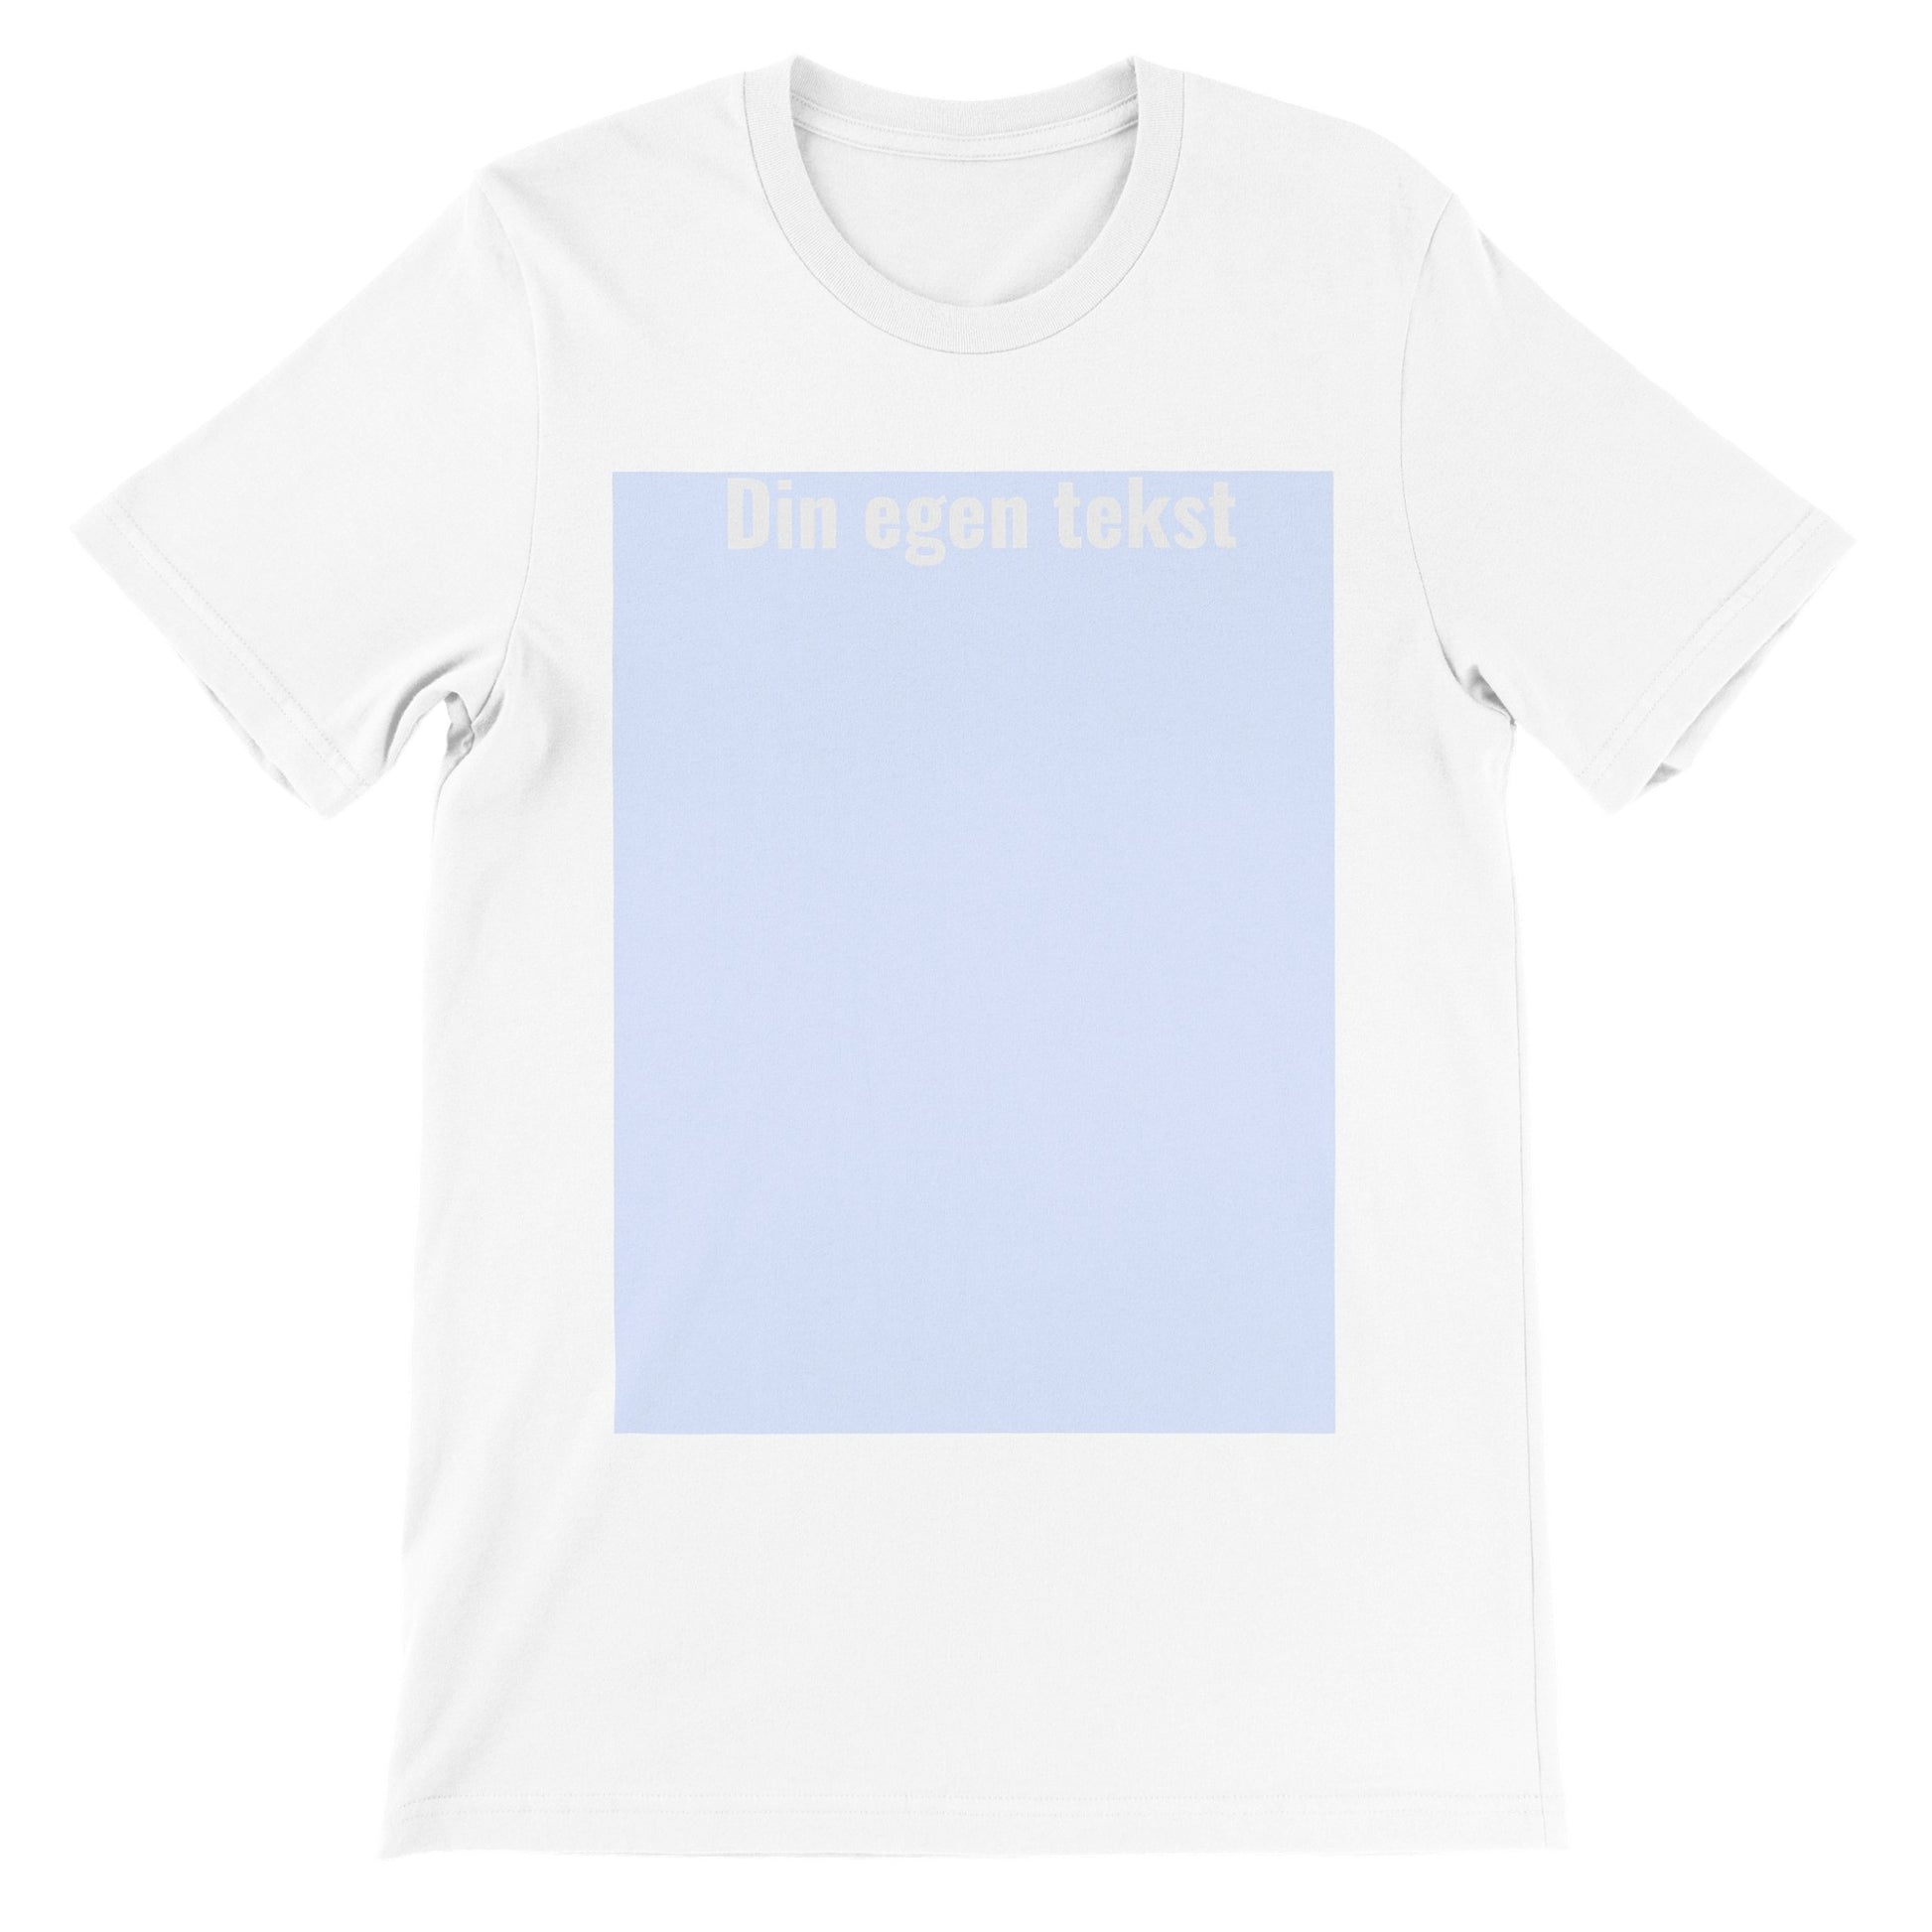 Design Selv T-shirt (billede eller (HVID) tekst ) Premium Unisex hvid T-shirt  med tekst og billede boks på t-shirt